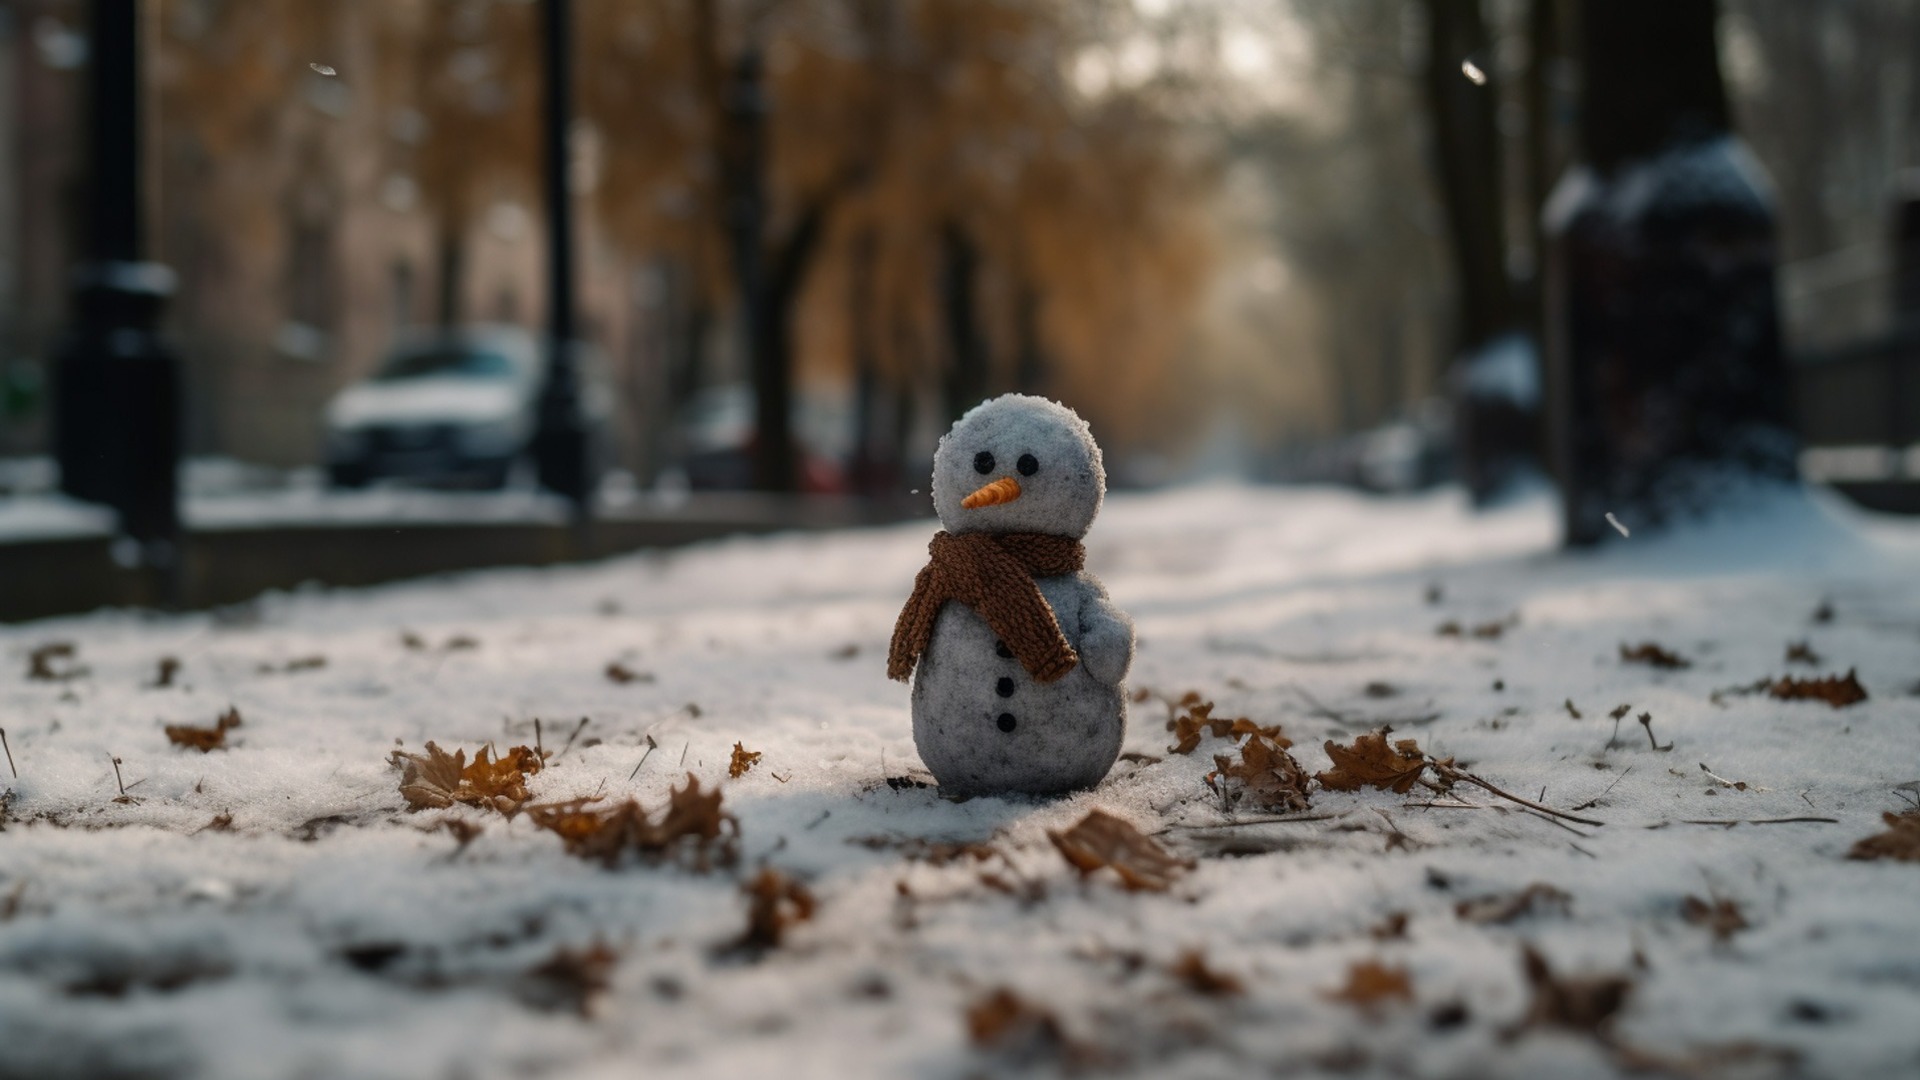 Зима пришла в Приморье: насколько суровой будет погода в регионе на этой неделе?